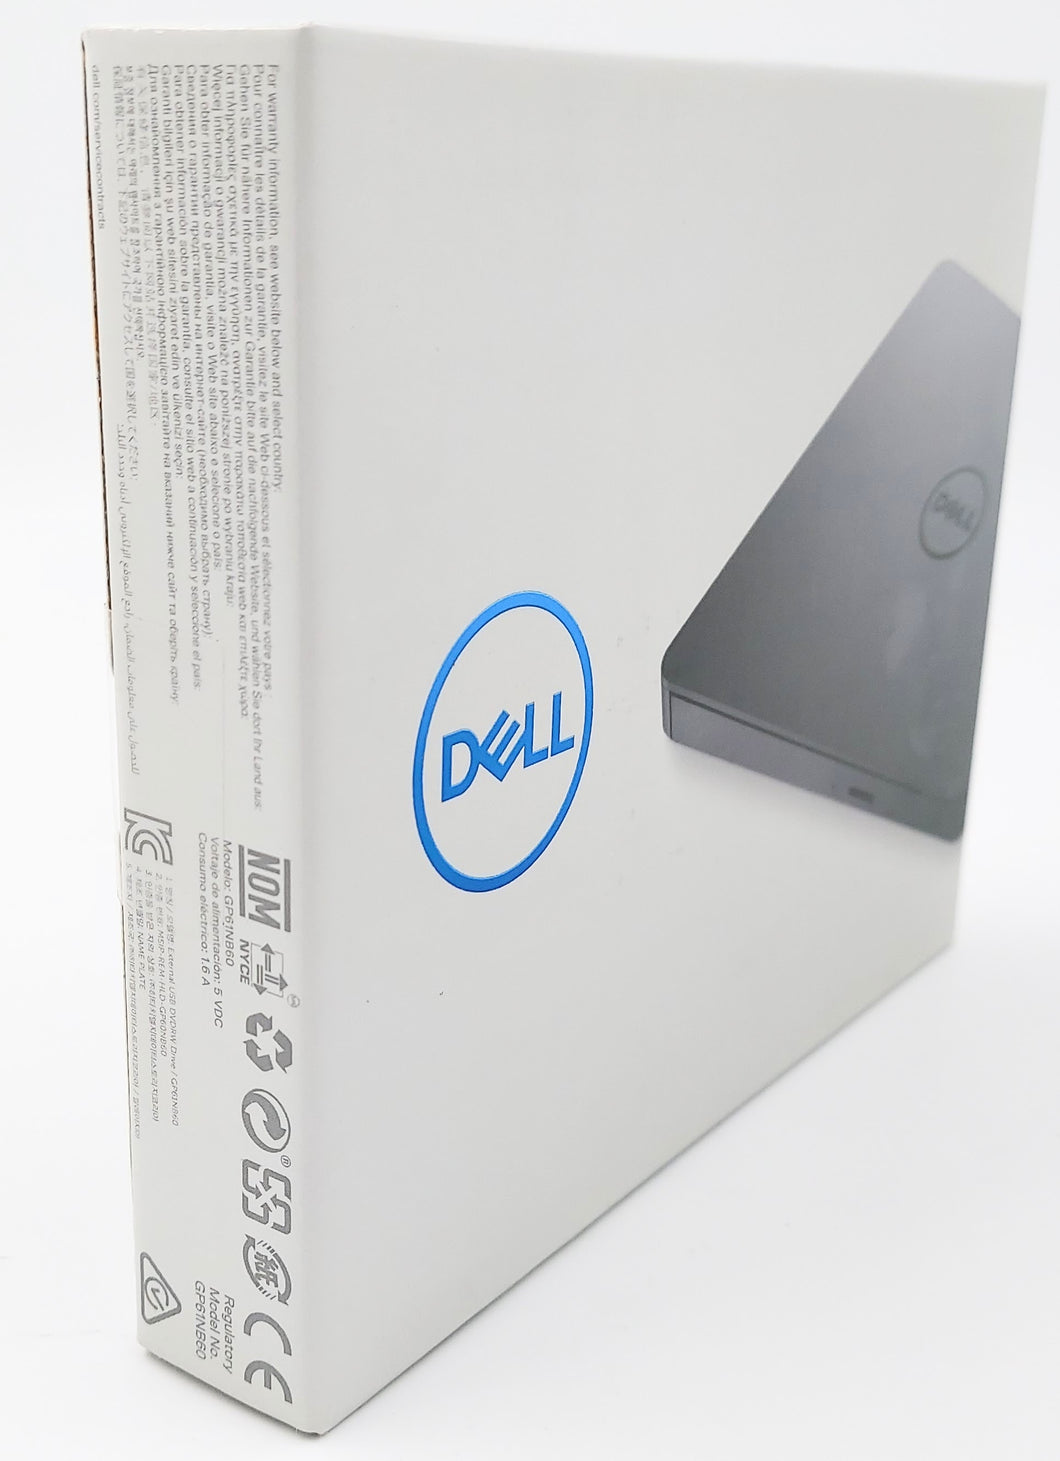 Dell USB Slim DVD Drive DW316 NEW IN BOX